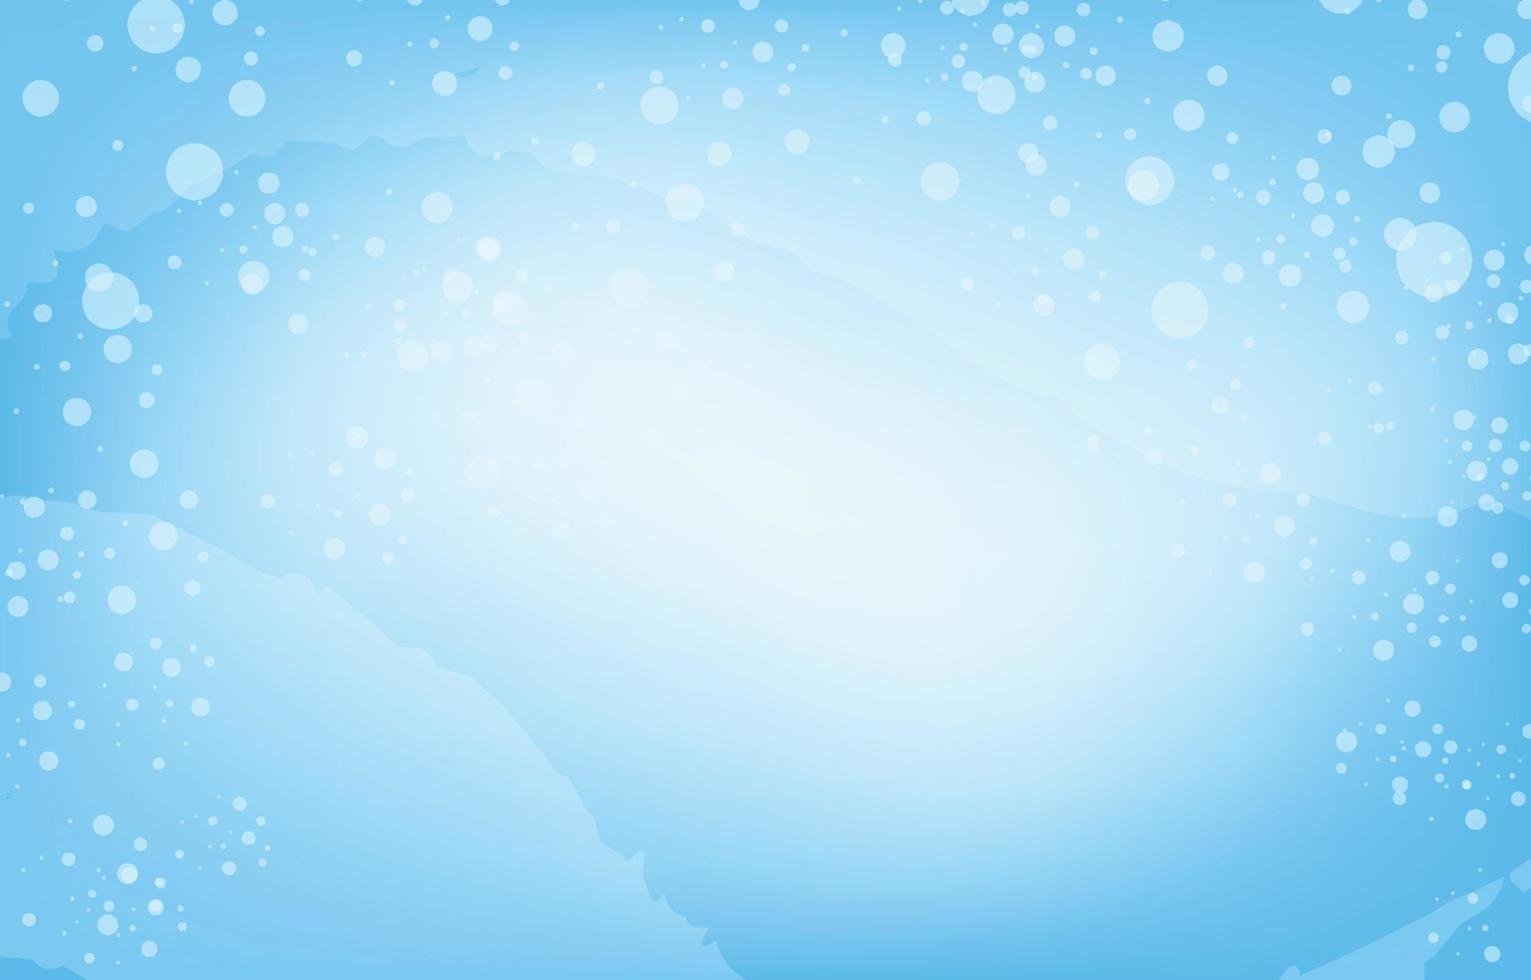 vecteur de fond de chute de neige. scène bleue et décorée de chutes de flocons de neige. il y a un espace de copie pour la conception. concept d'hiver, de noël et du nouvel an.